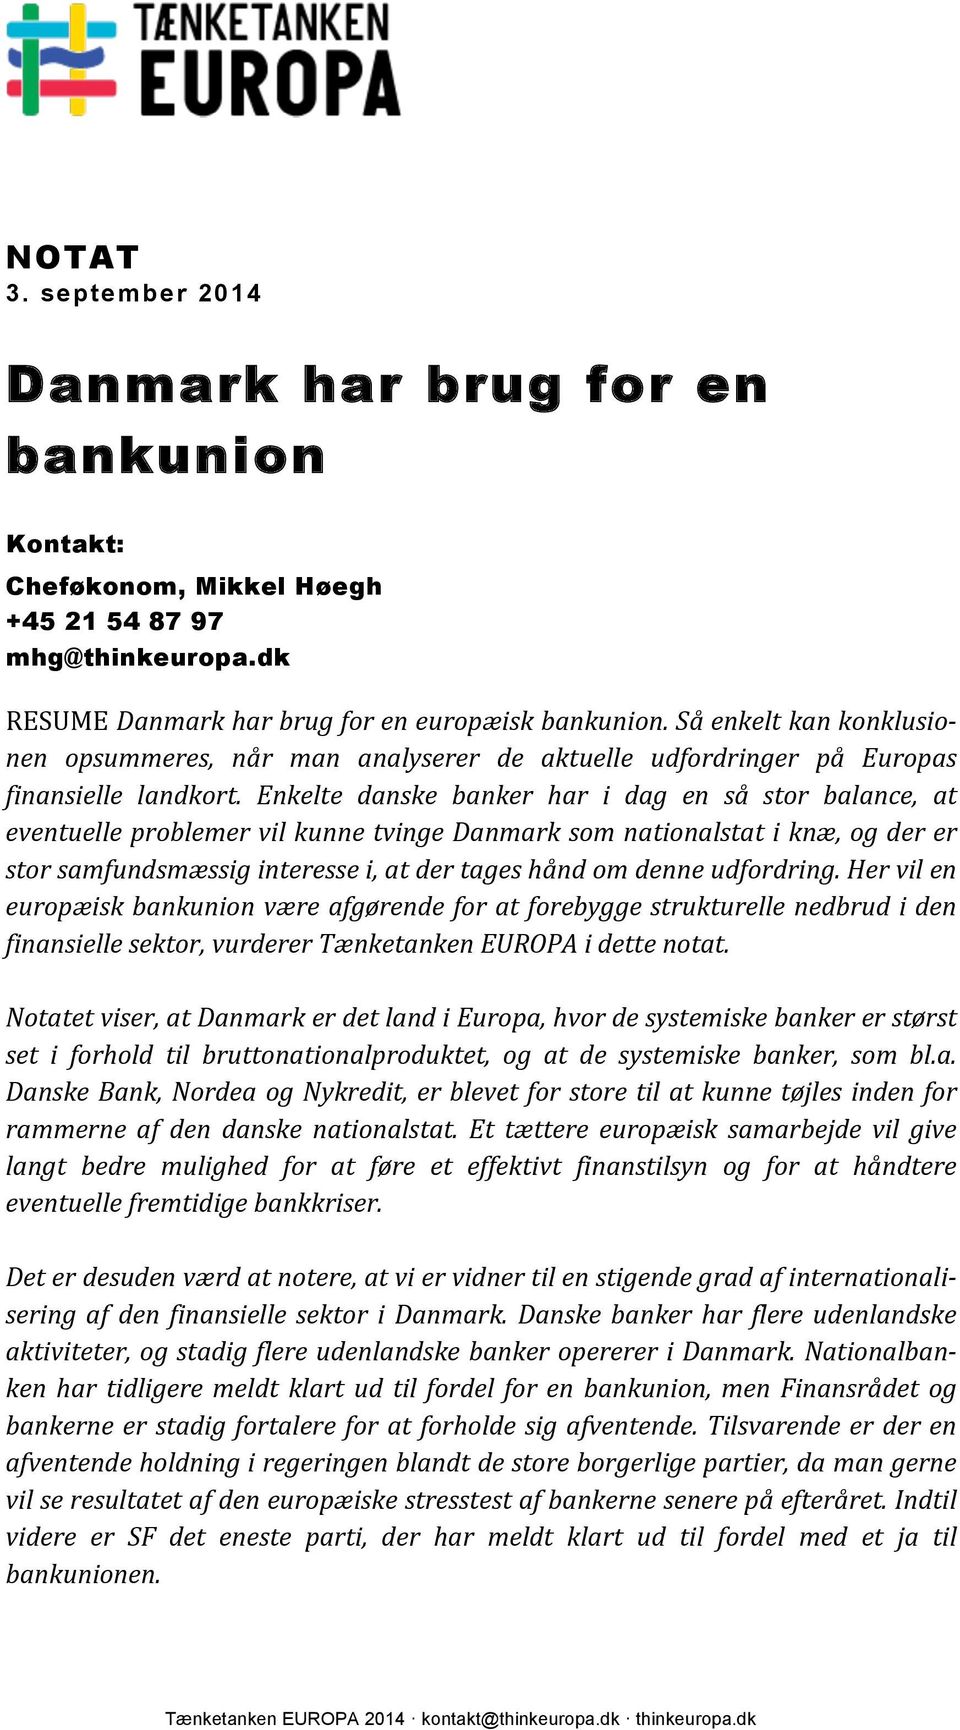 Enkelte danske banker har i dag en så stor balance, at eventuelle problemer vil kunne tvinge Danmark som nationalstat i knæ, og der er stor samfundsmæssig interesse i, at der tages hånd om denne